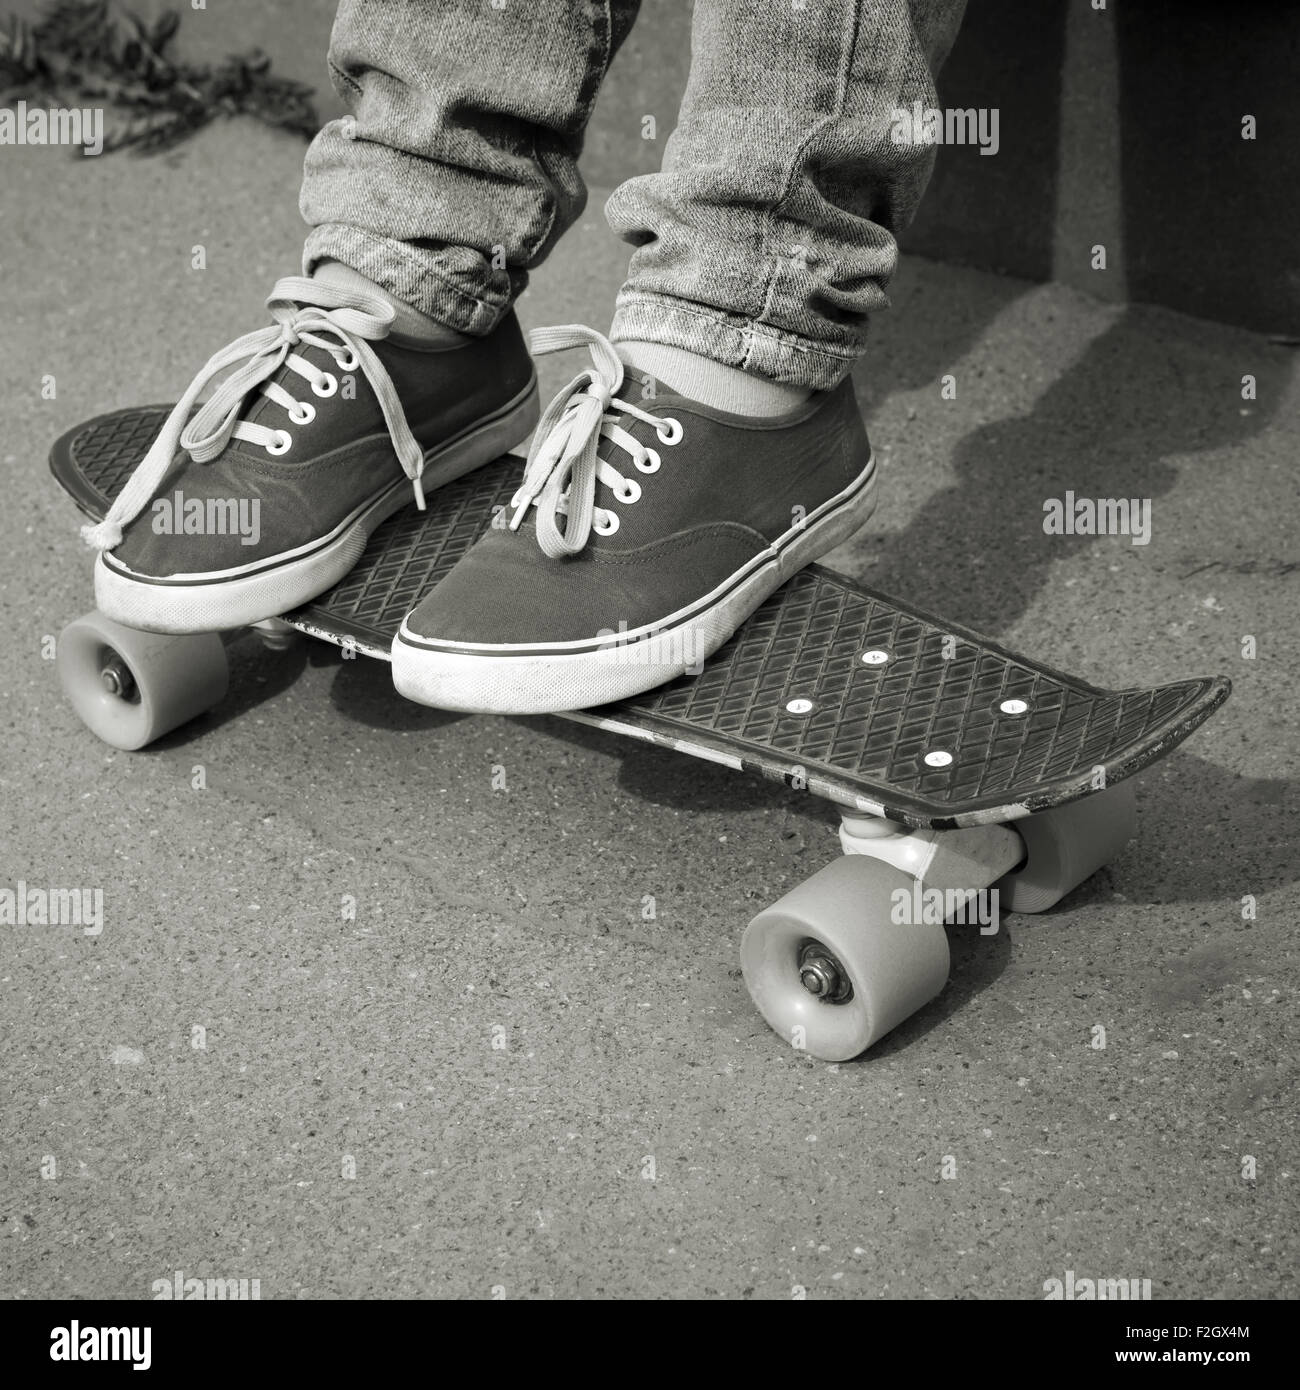 Adolescent pieds de jeans et gumshoes sur une planche à roulettes Banque D'Images